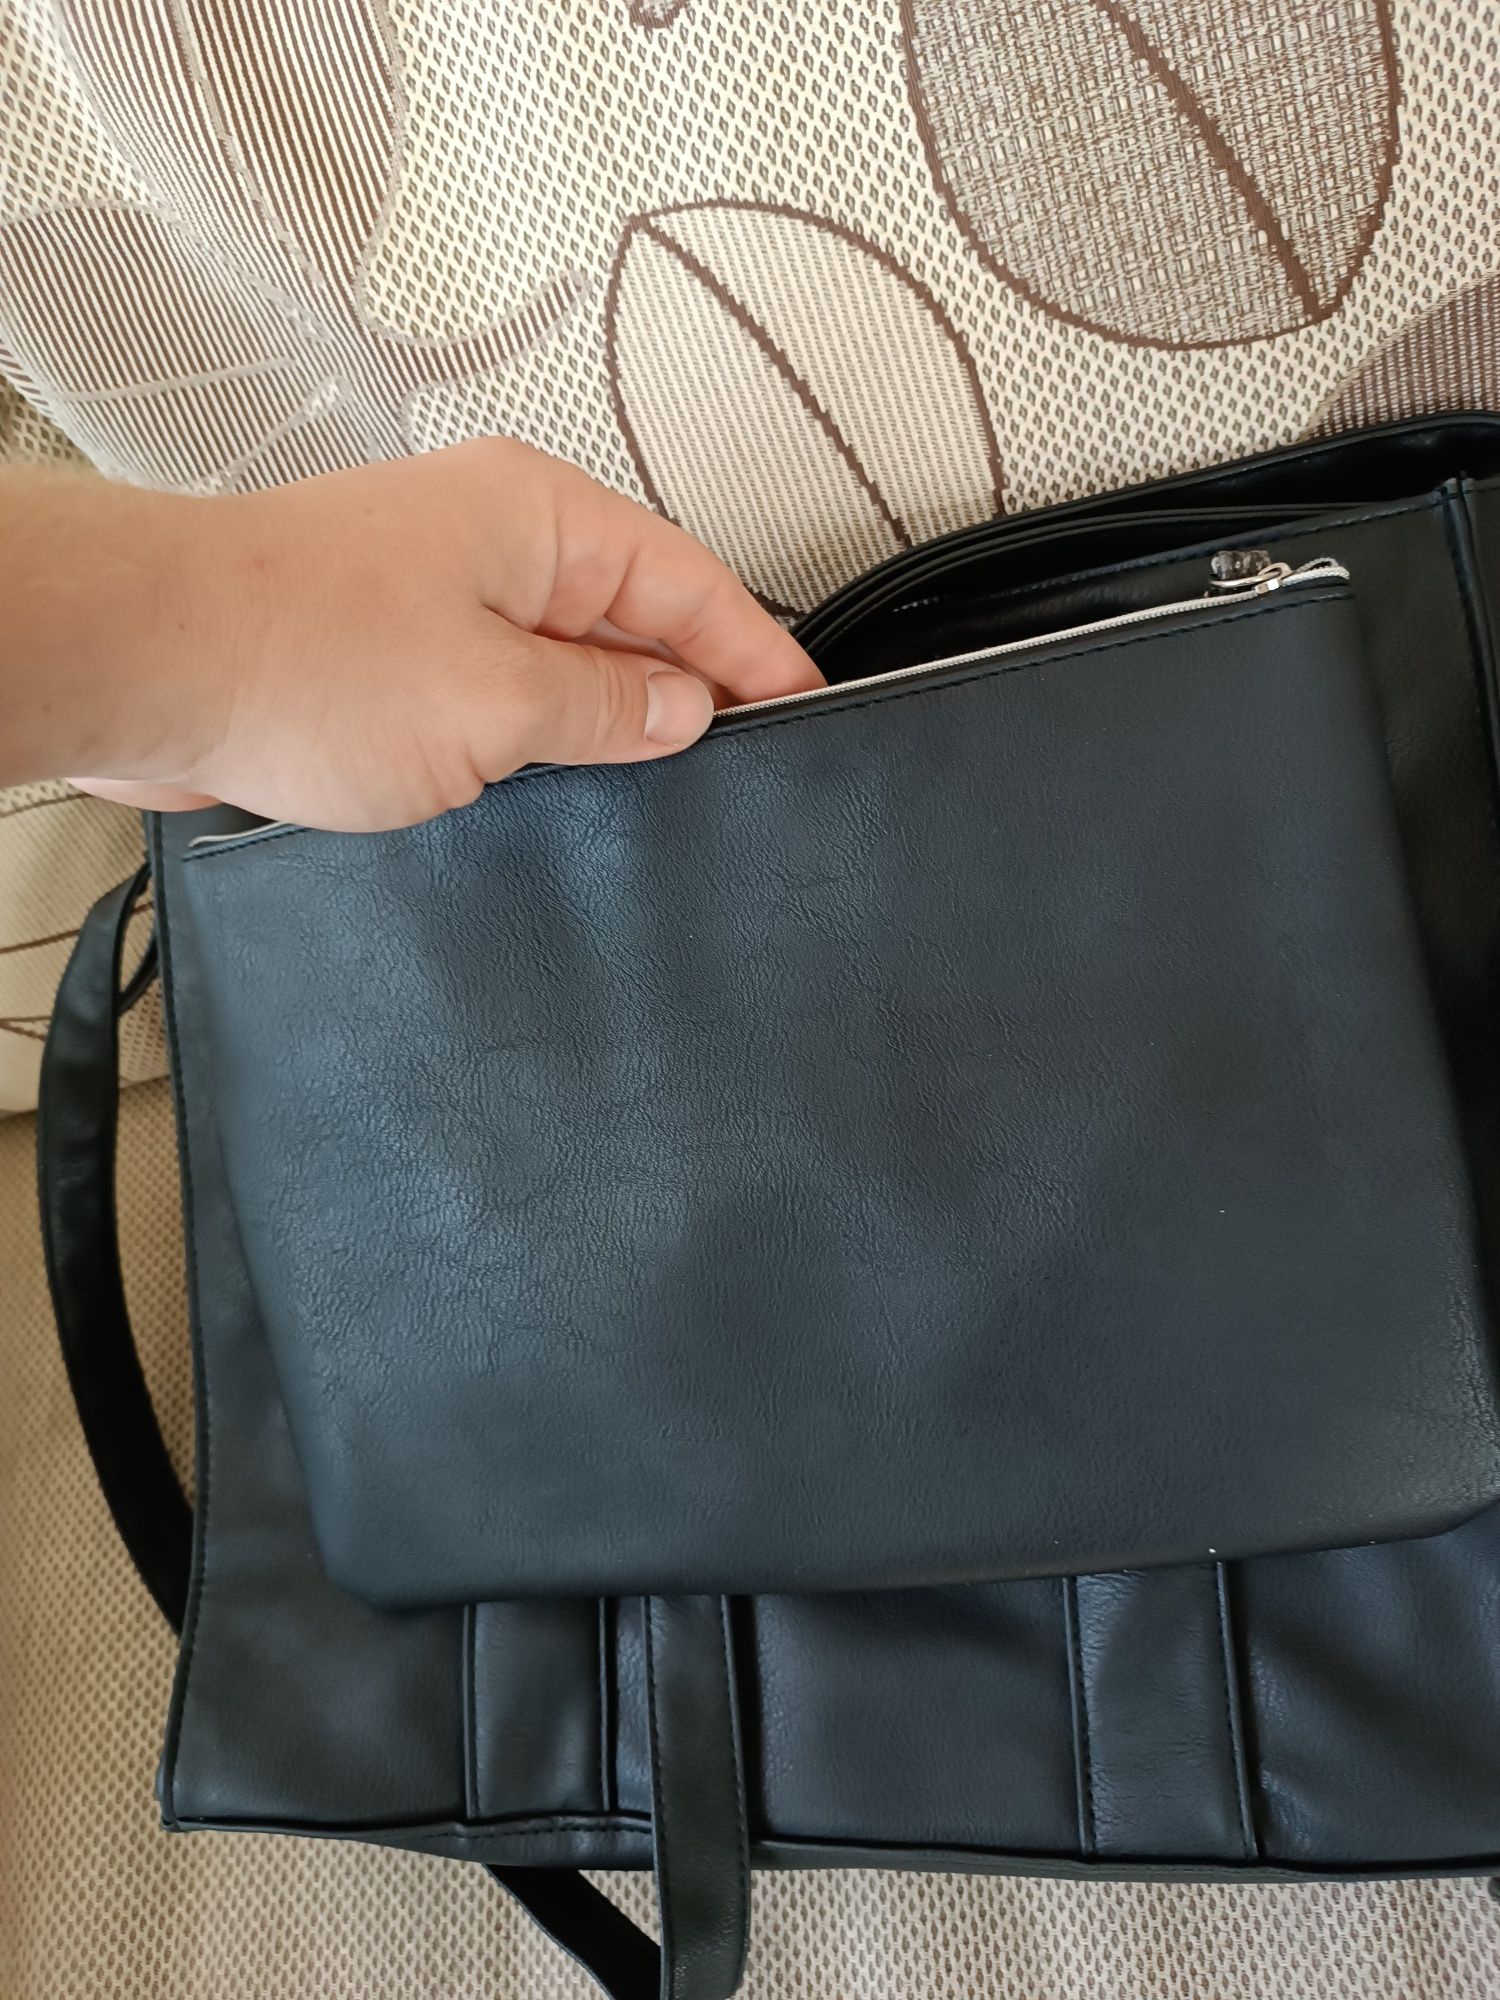 Страхотна Дамска чанта с мини чантичка към нея!